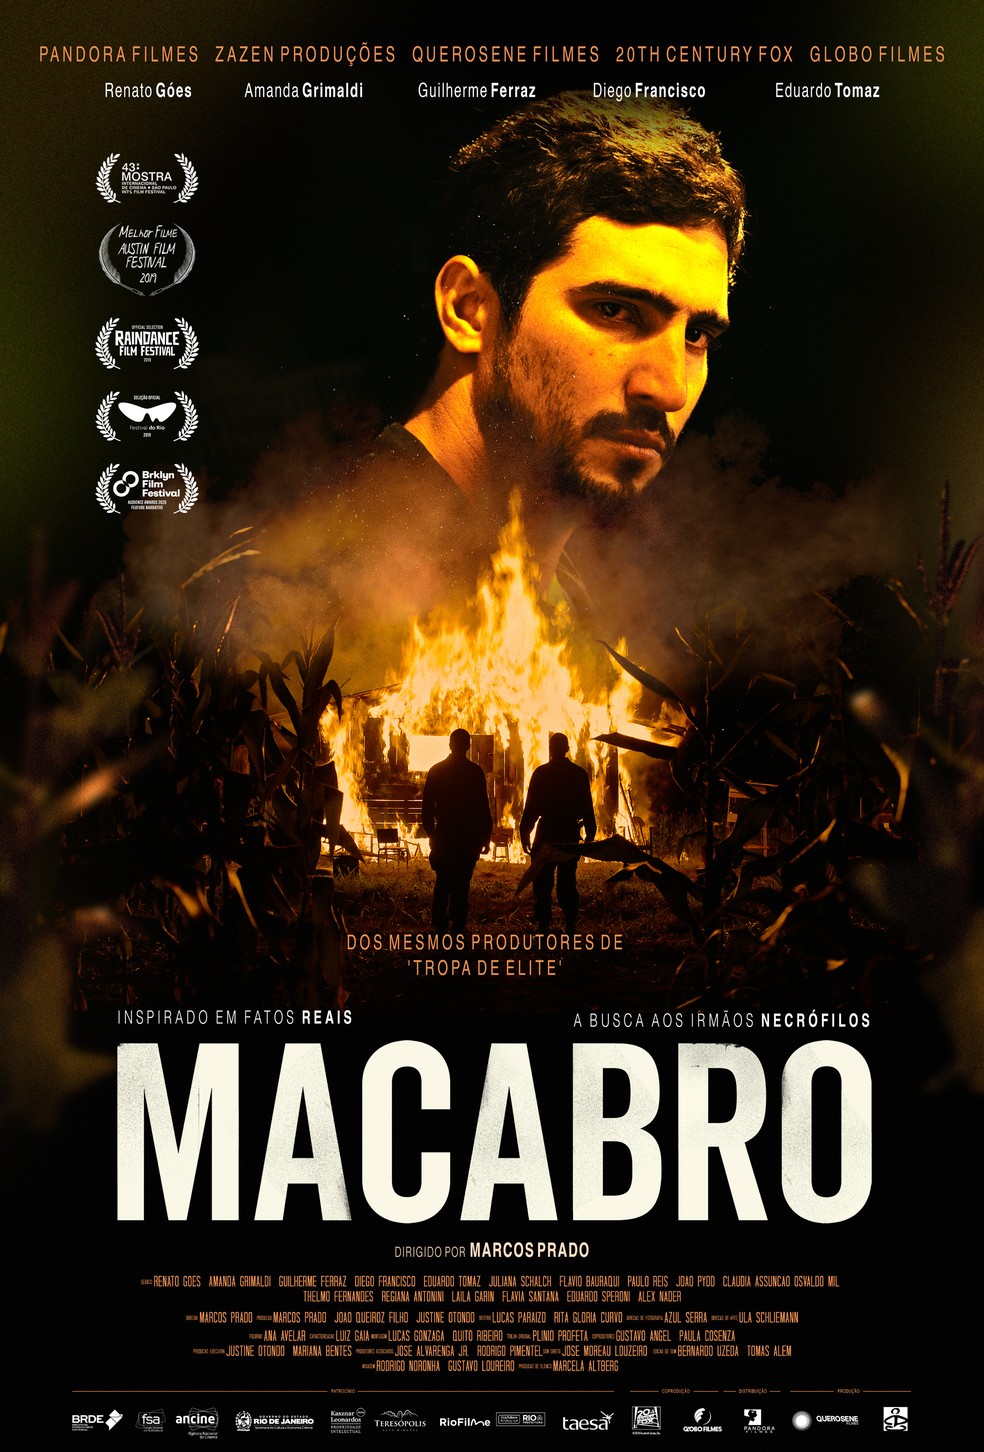 Macabro', filme de suspense com Renato Góes, estreia dia 28 em drive-in;  veja novo trailer | Cinema | G1